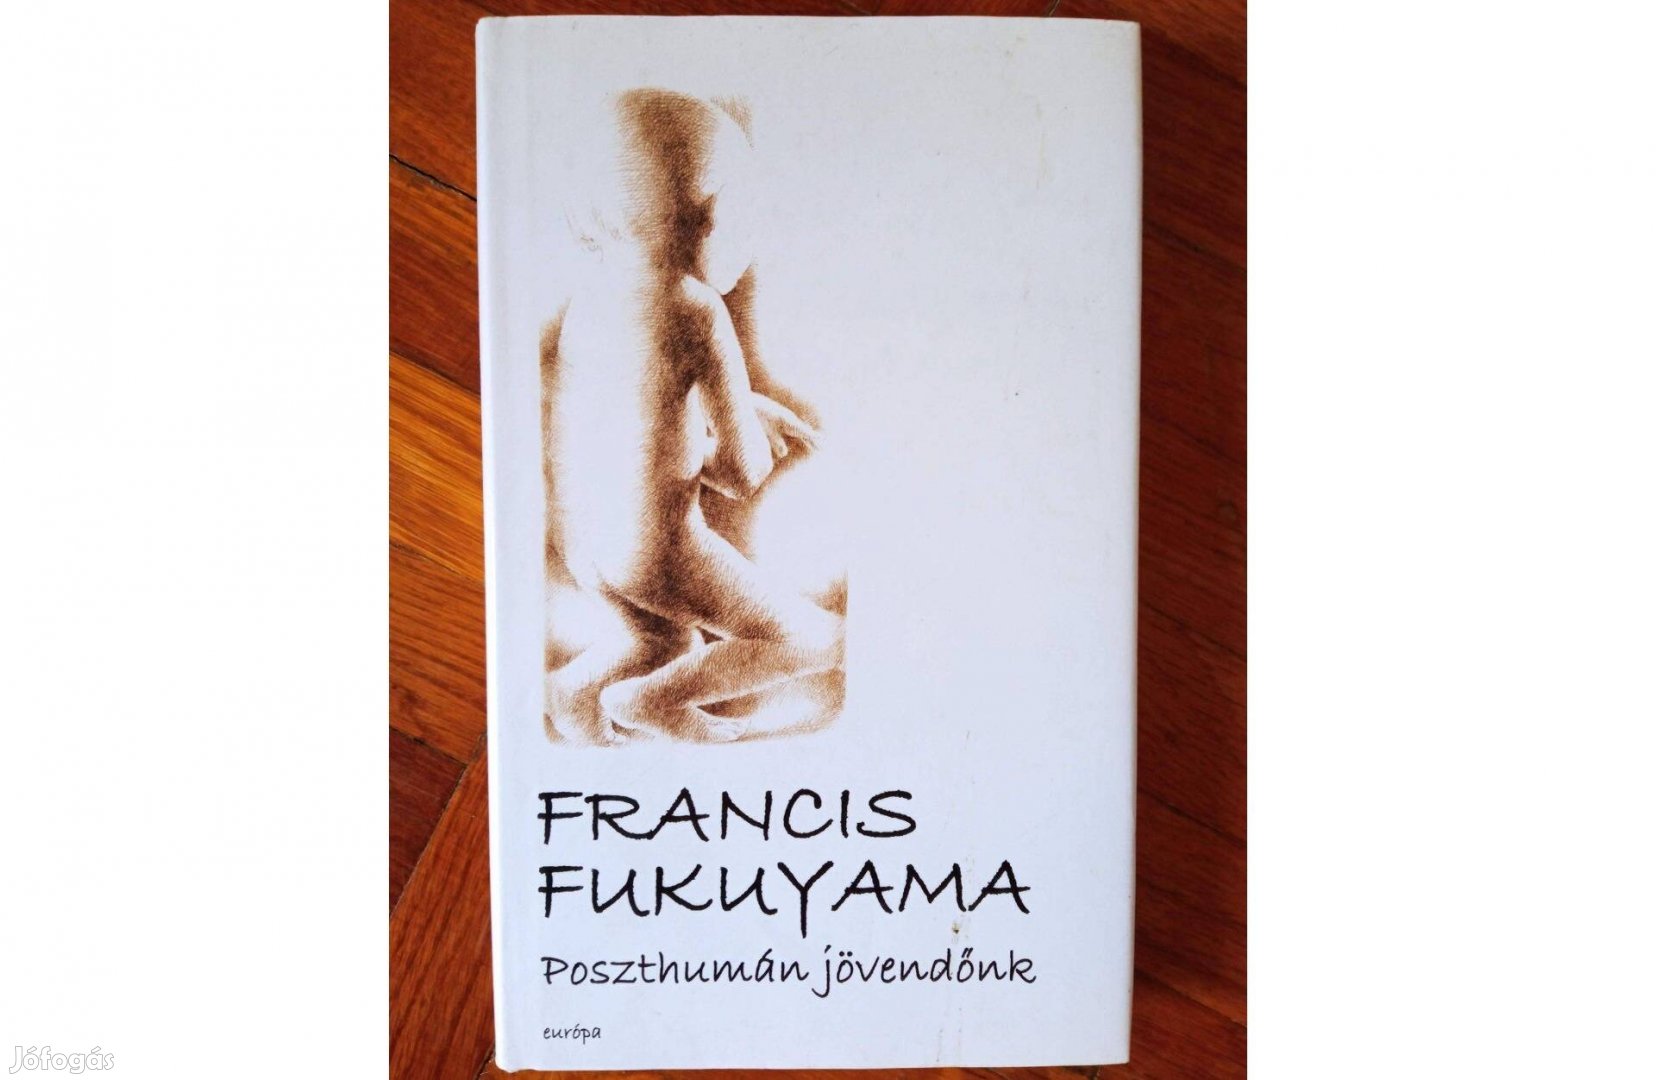 Francis Fukuyama - Poszthumán jövendőnk